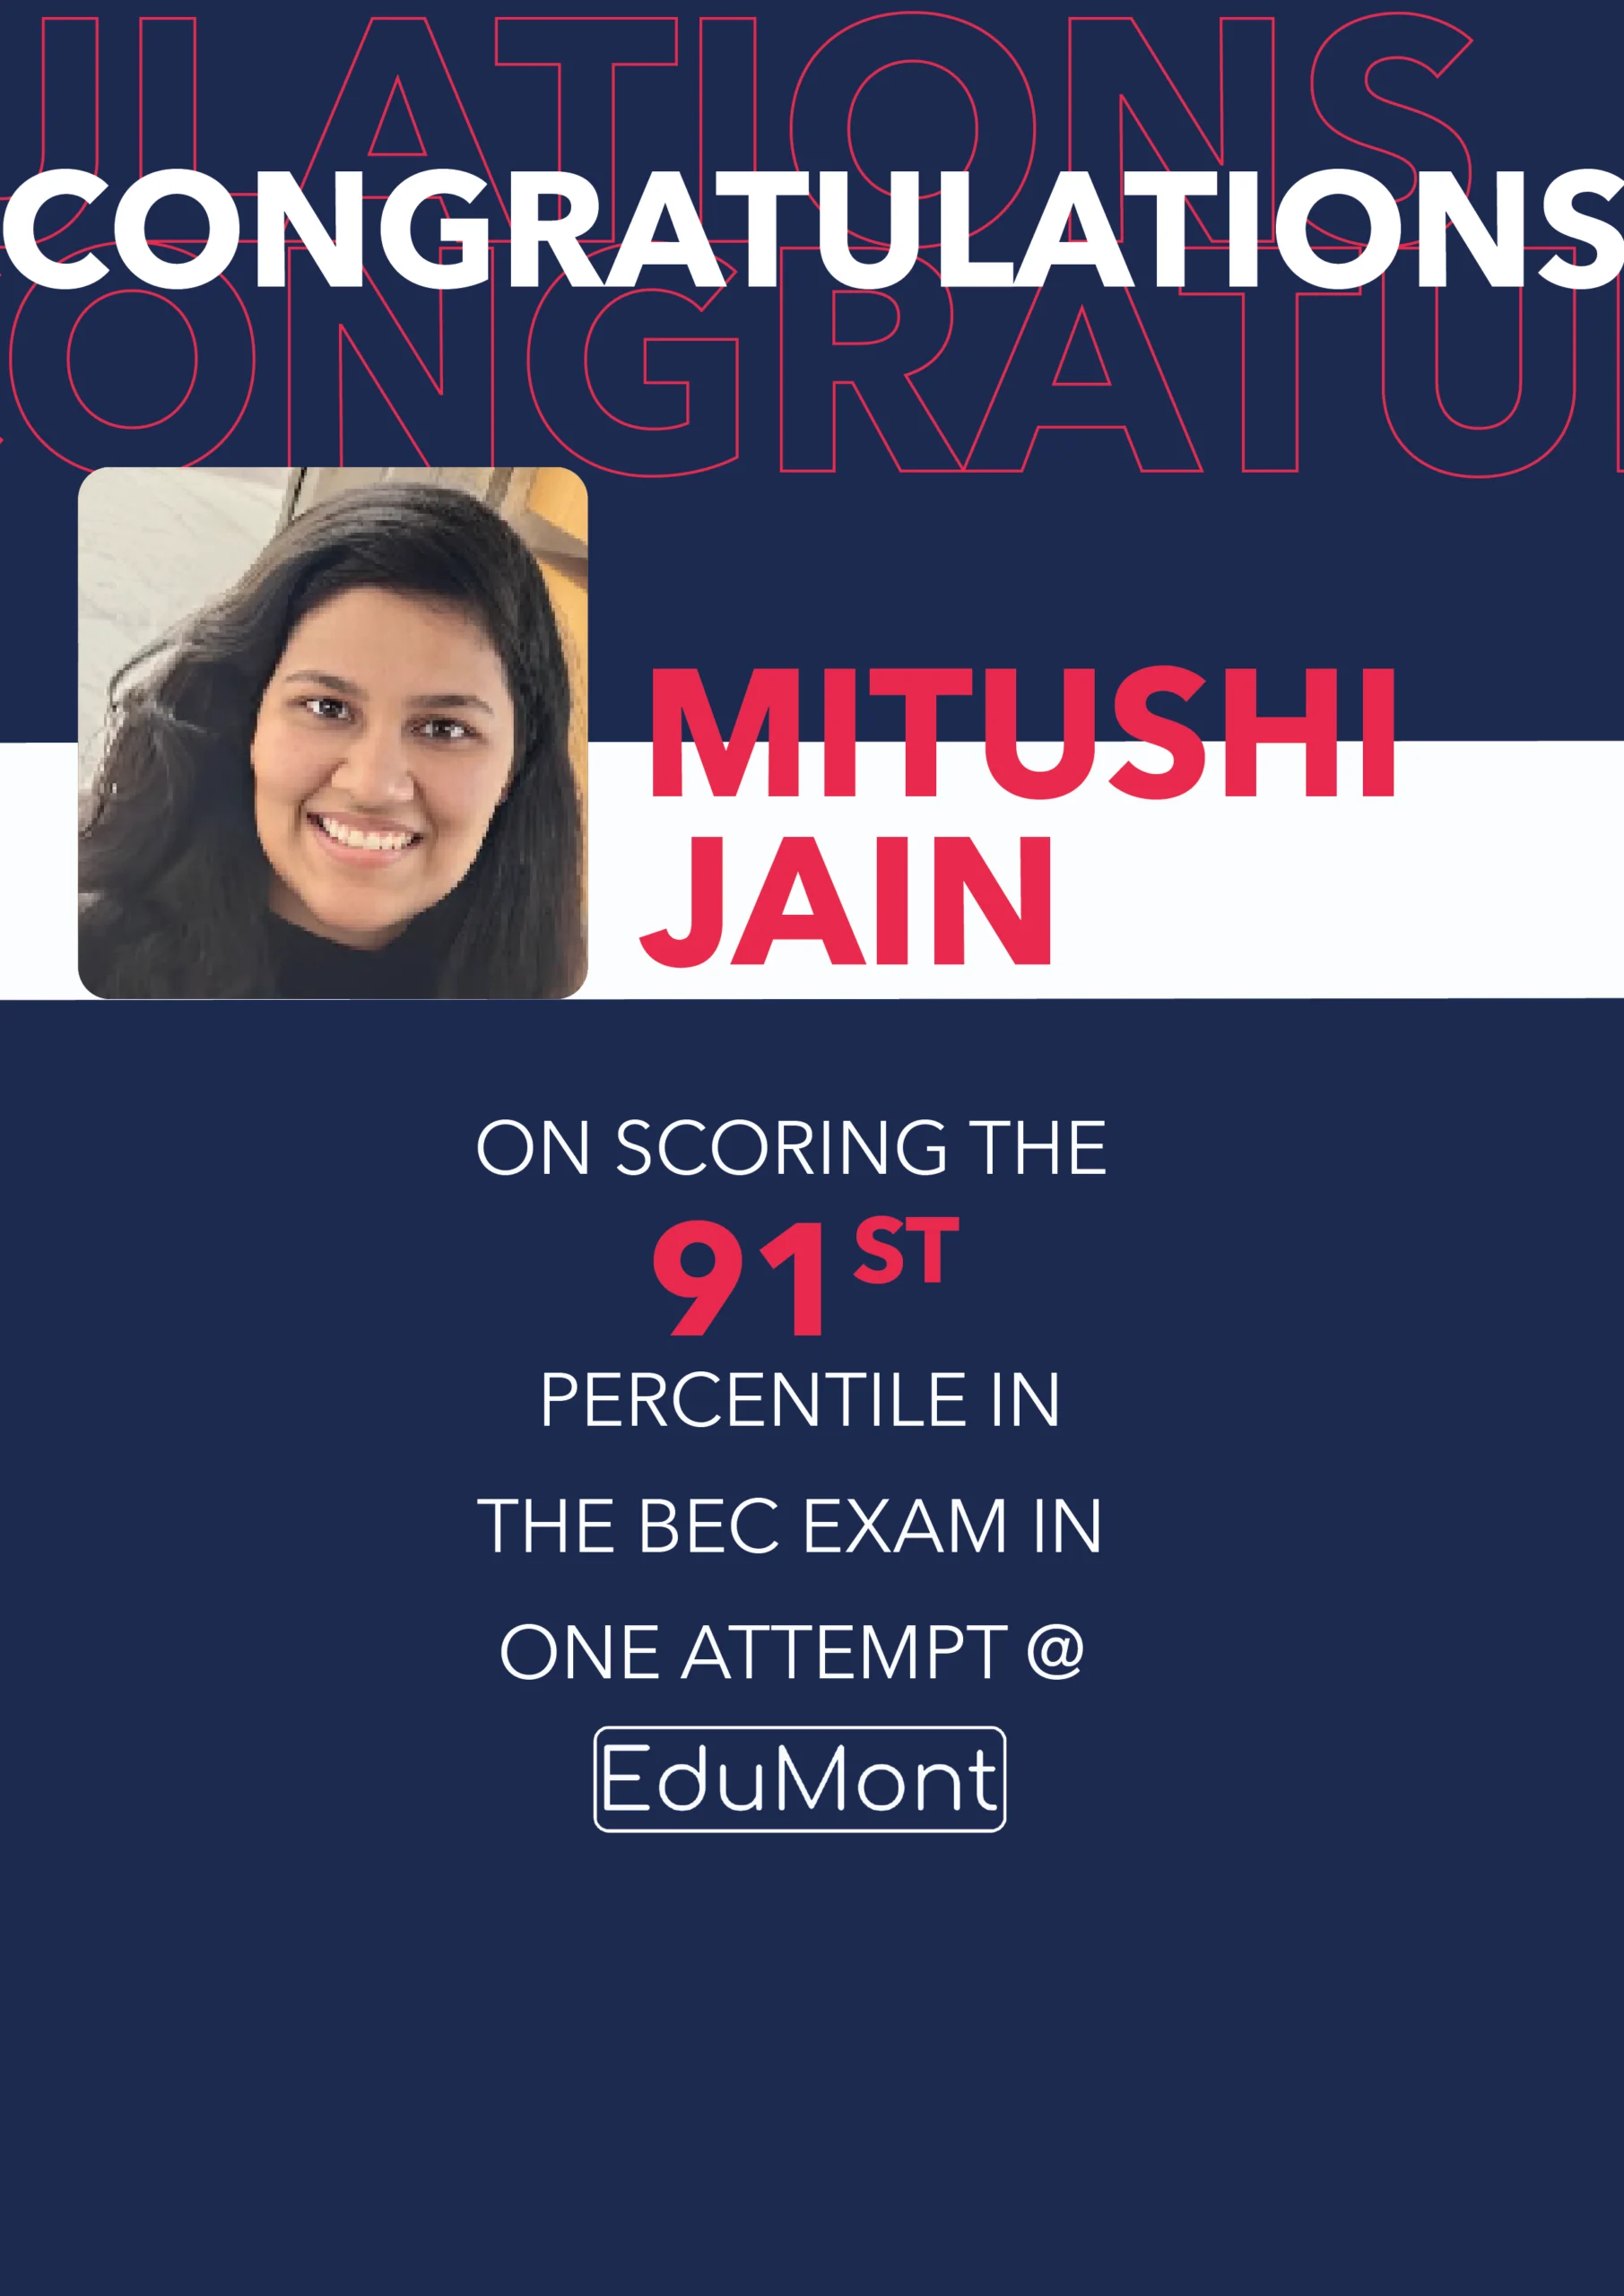 Congratulations Mitushi Jain